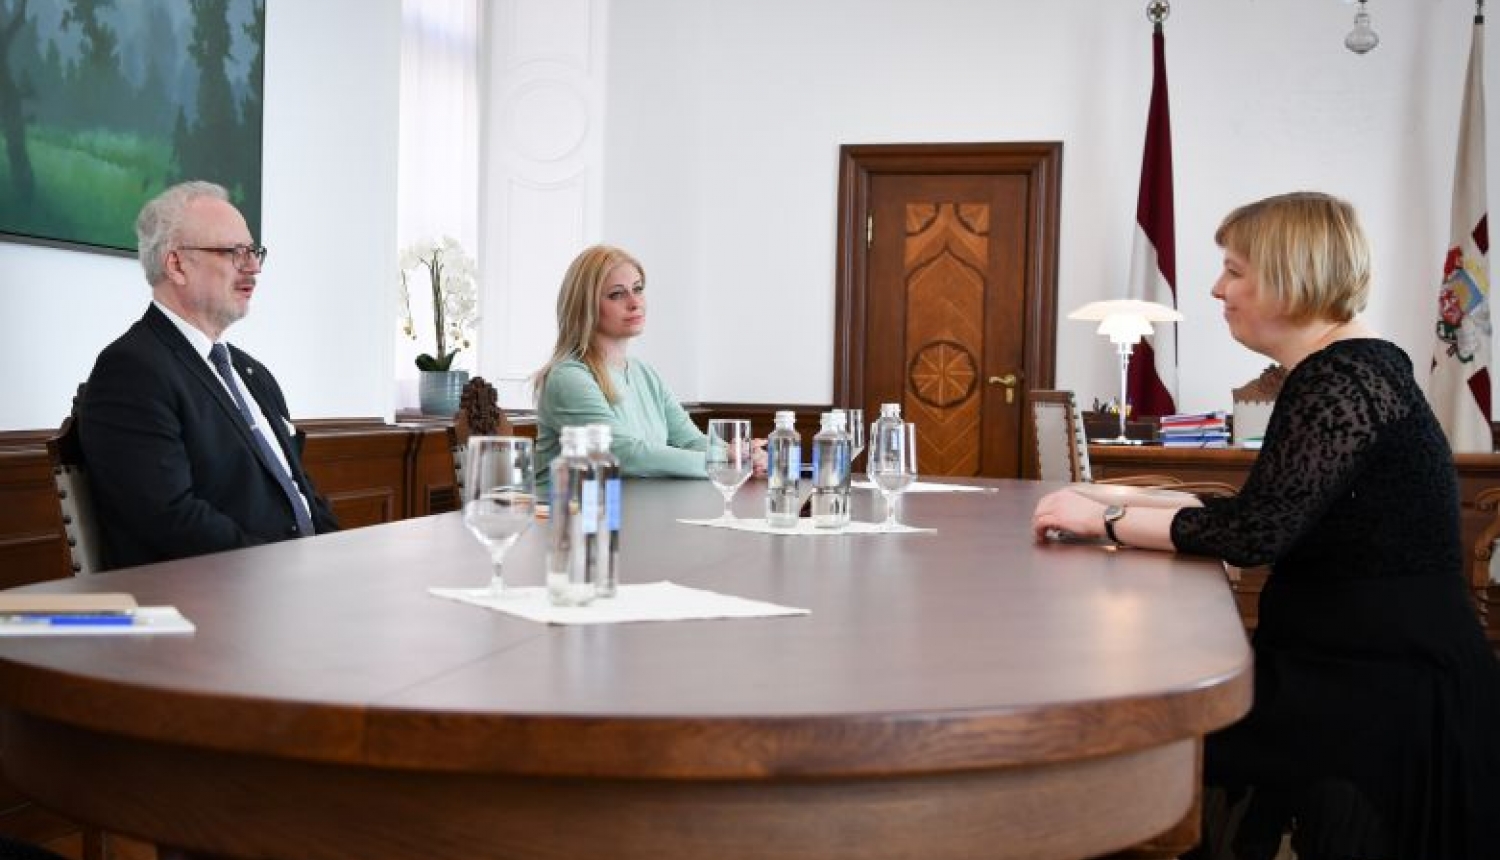 Valsts prezidents: Rīgas domes ārkārtas vēlēšanām jānorit droši un jāiesaista plašs vēlētāju loks